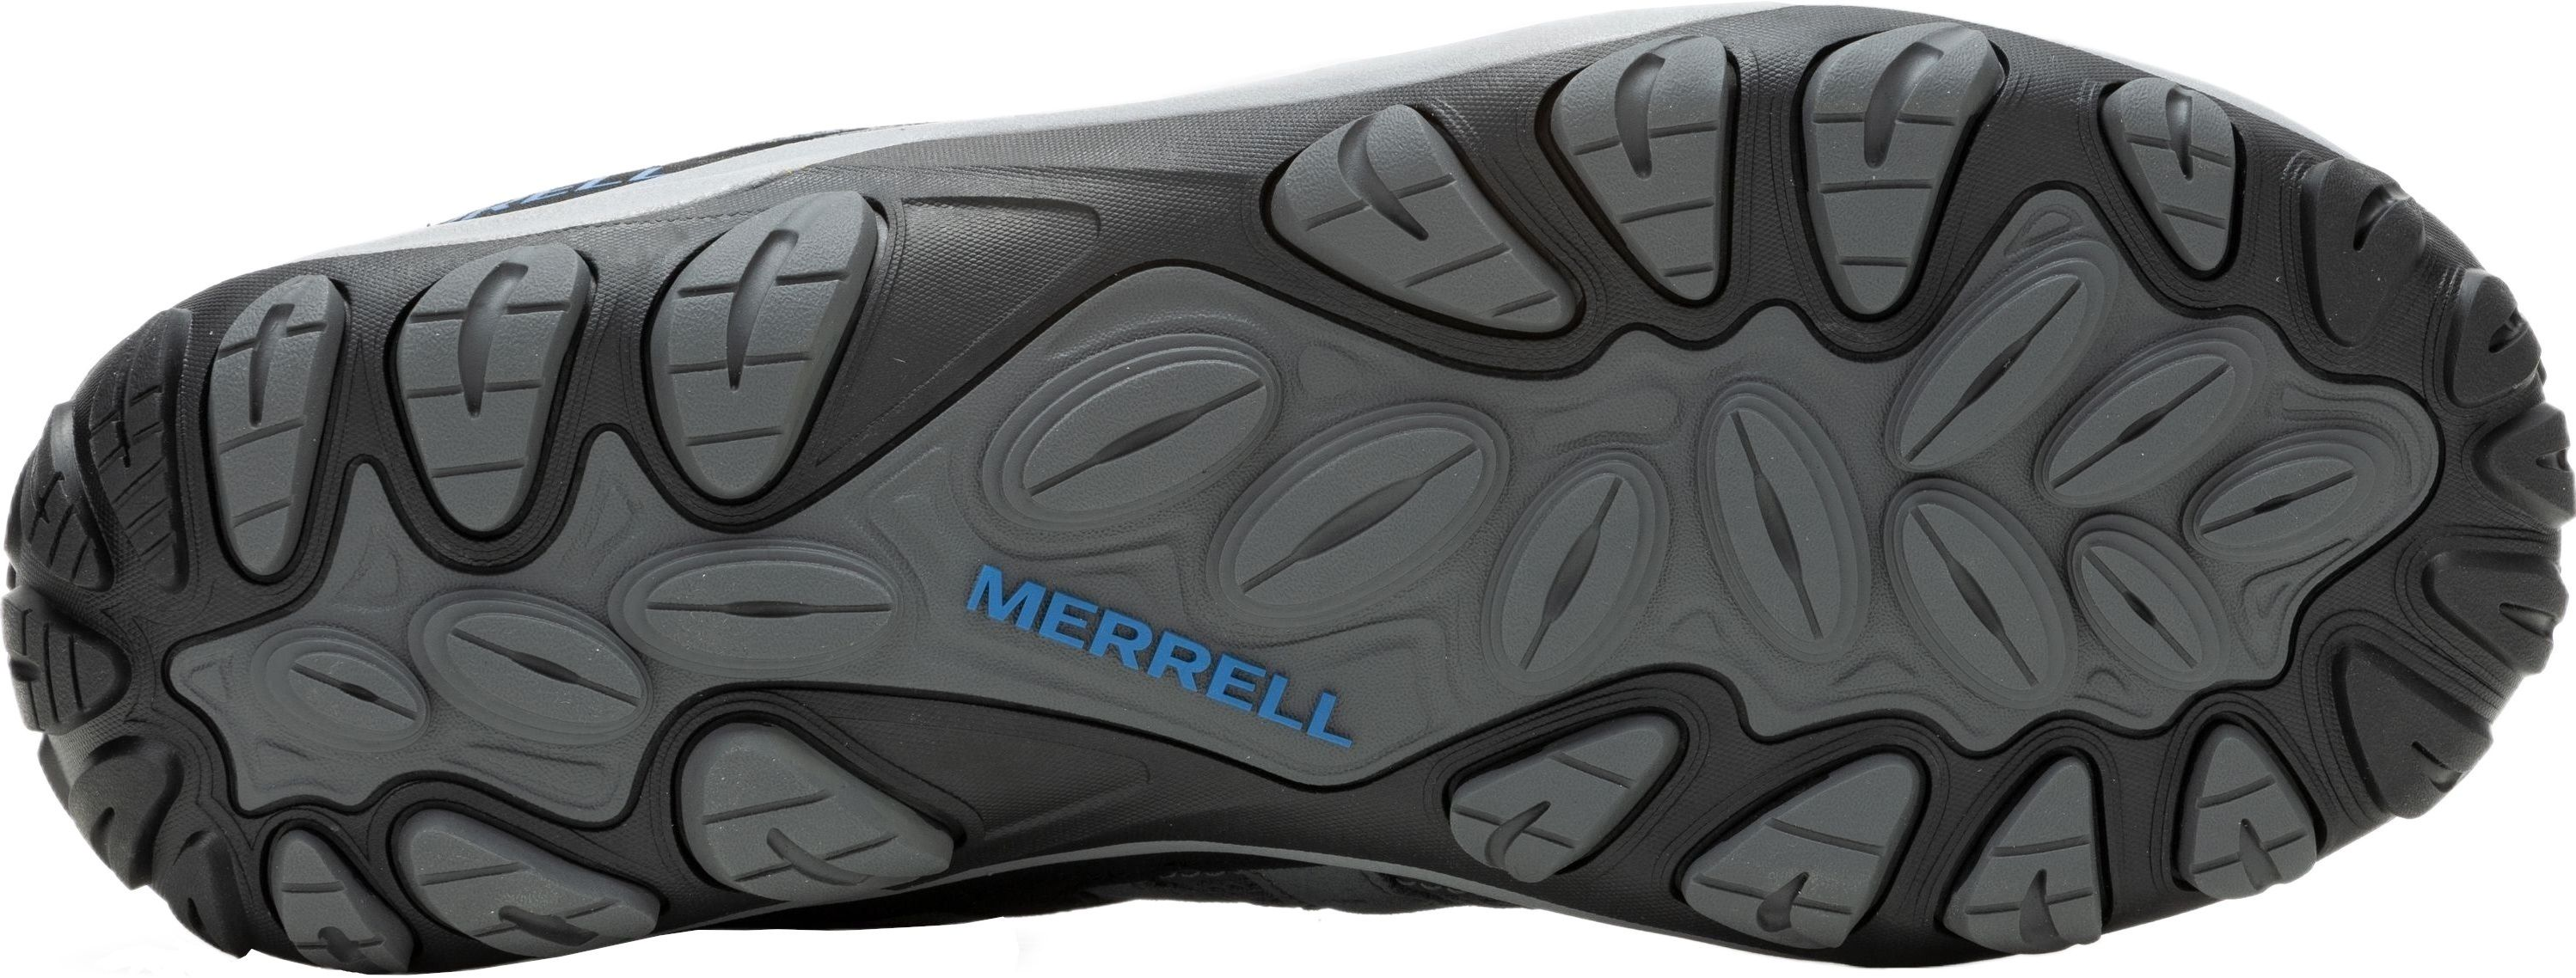 Кроссовки мужские Merrell Accentor 3 Rock/Blue 46.5 серый/синий фото 6